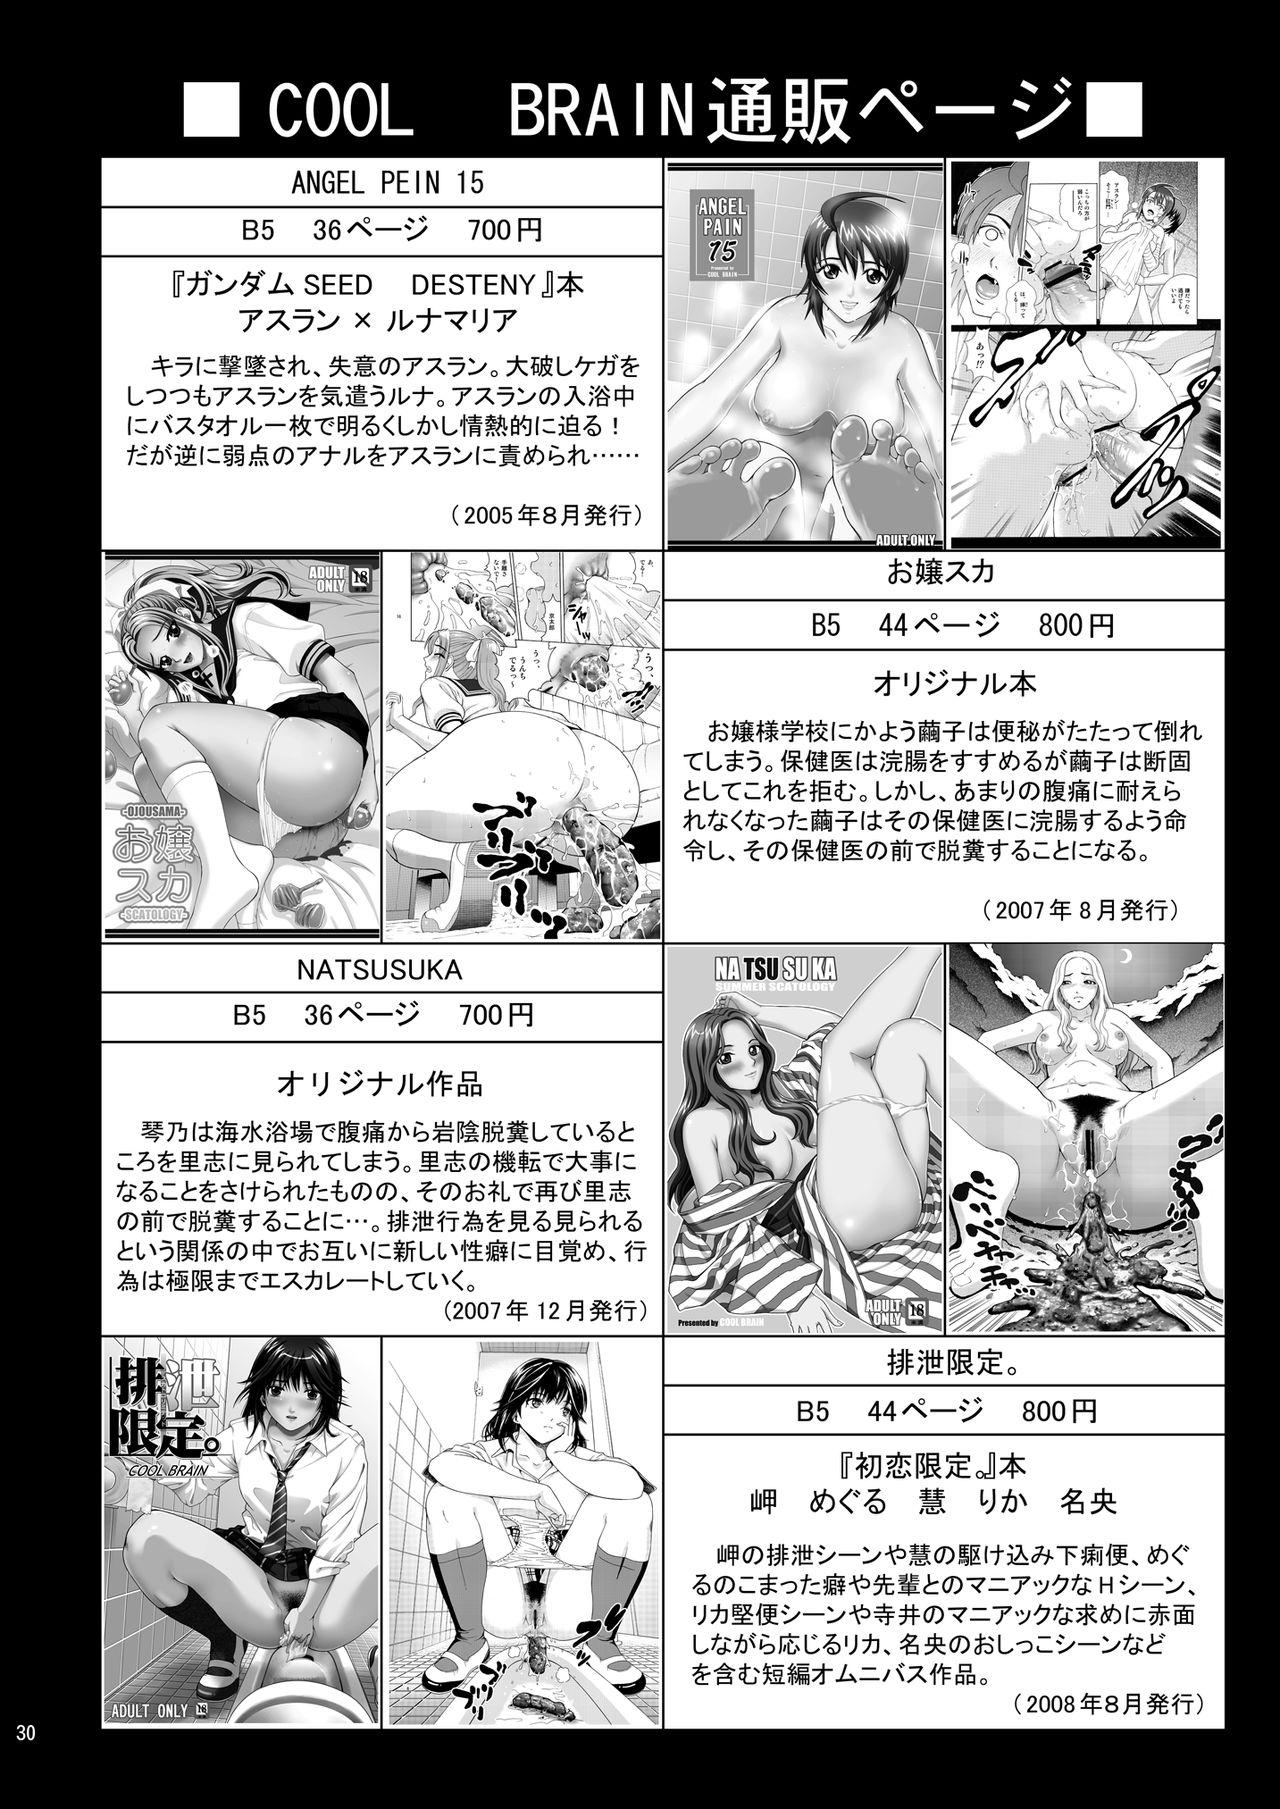 Angel Pain Extra 11 - Majimekko de suka!? 29